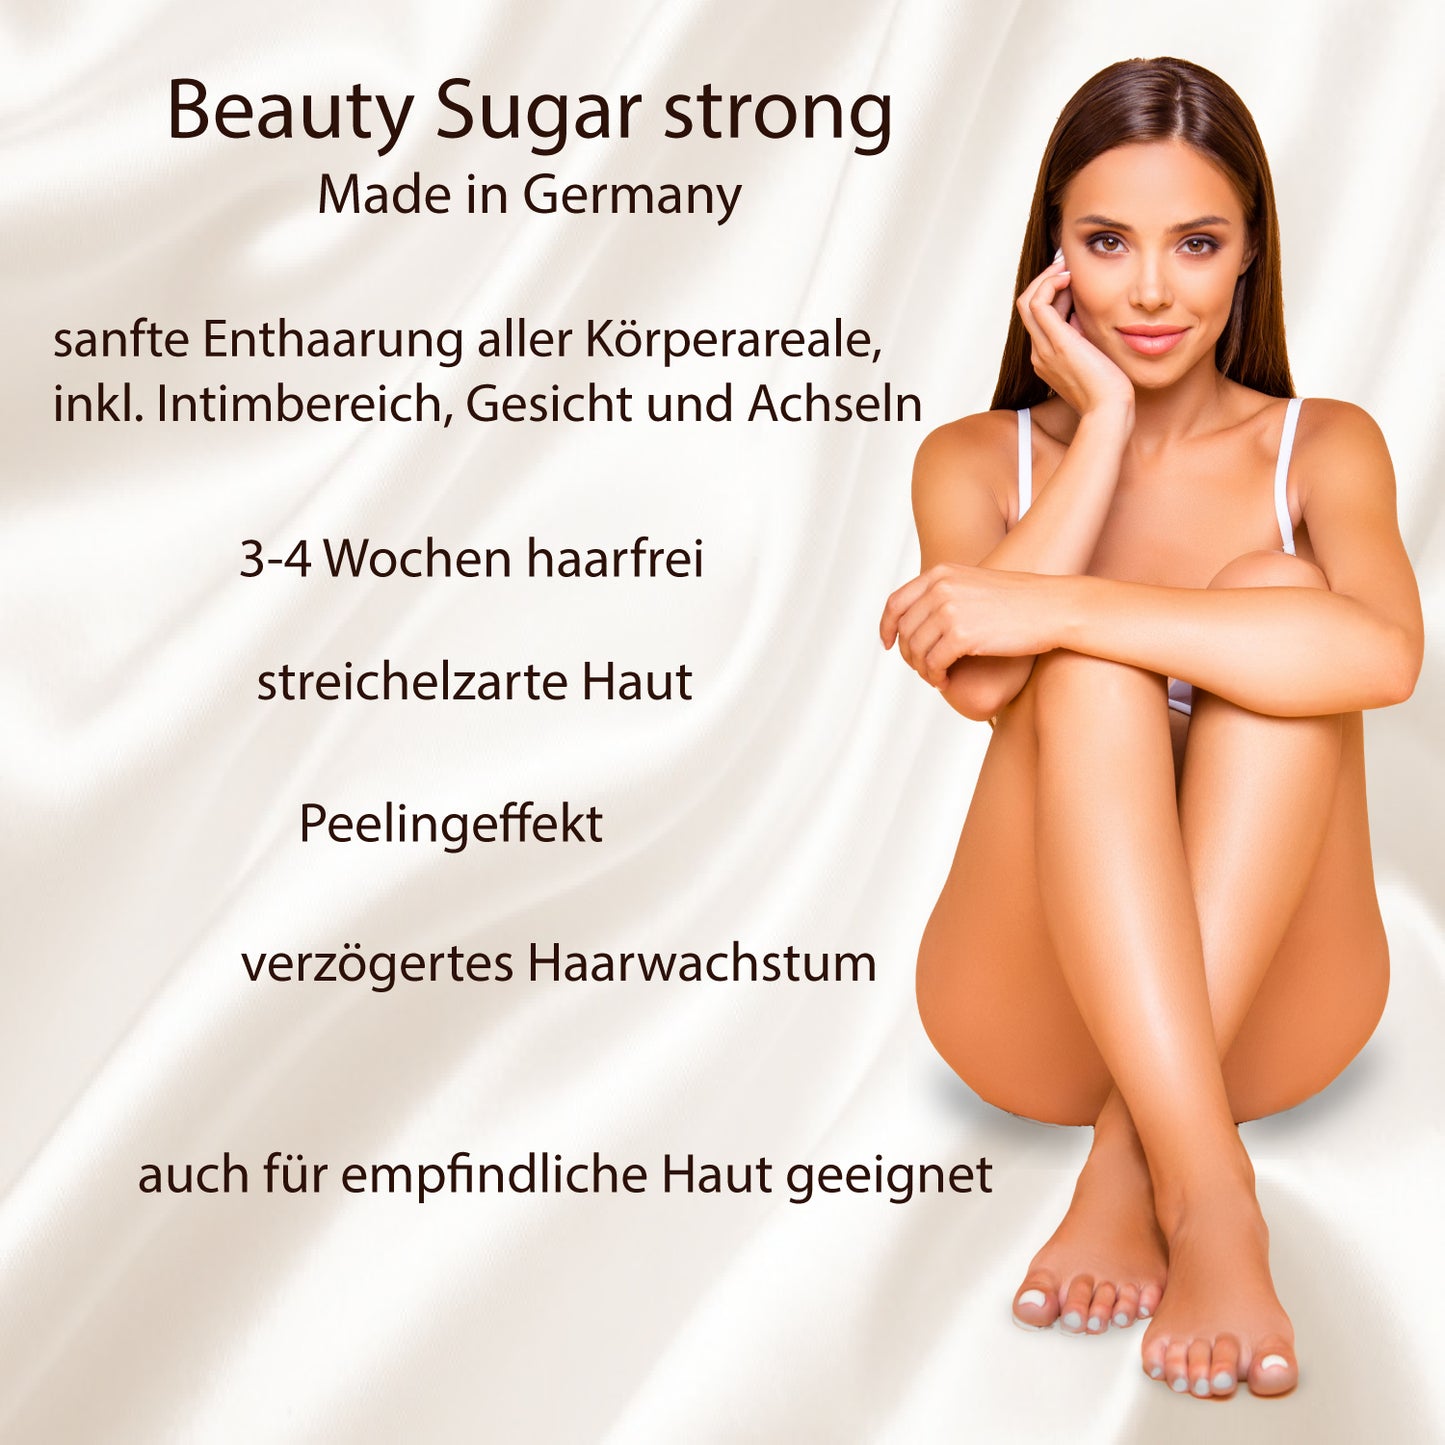 Spare über 20 % - Beauty Sugar "strong" - Vorteilspaket - 4 Dosen á 600g (2400g) Zuckerpaste - EAN 4260523460293